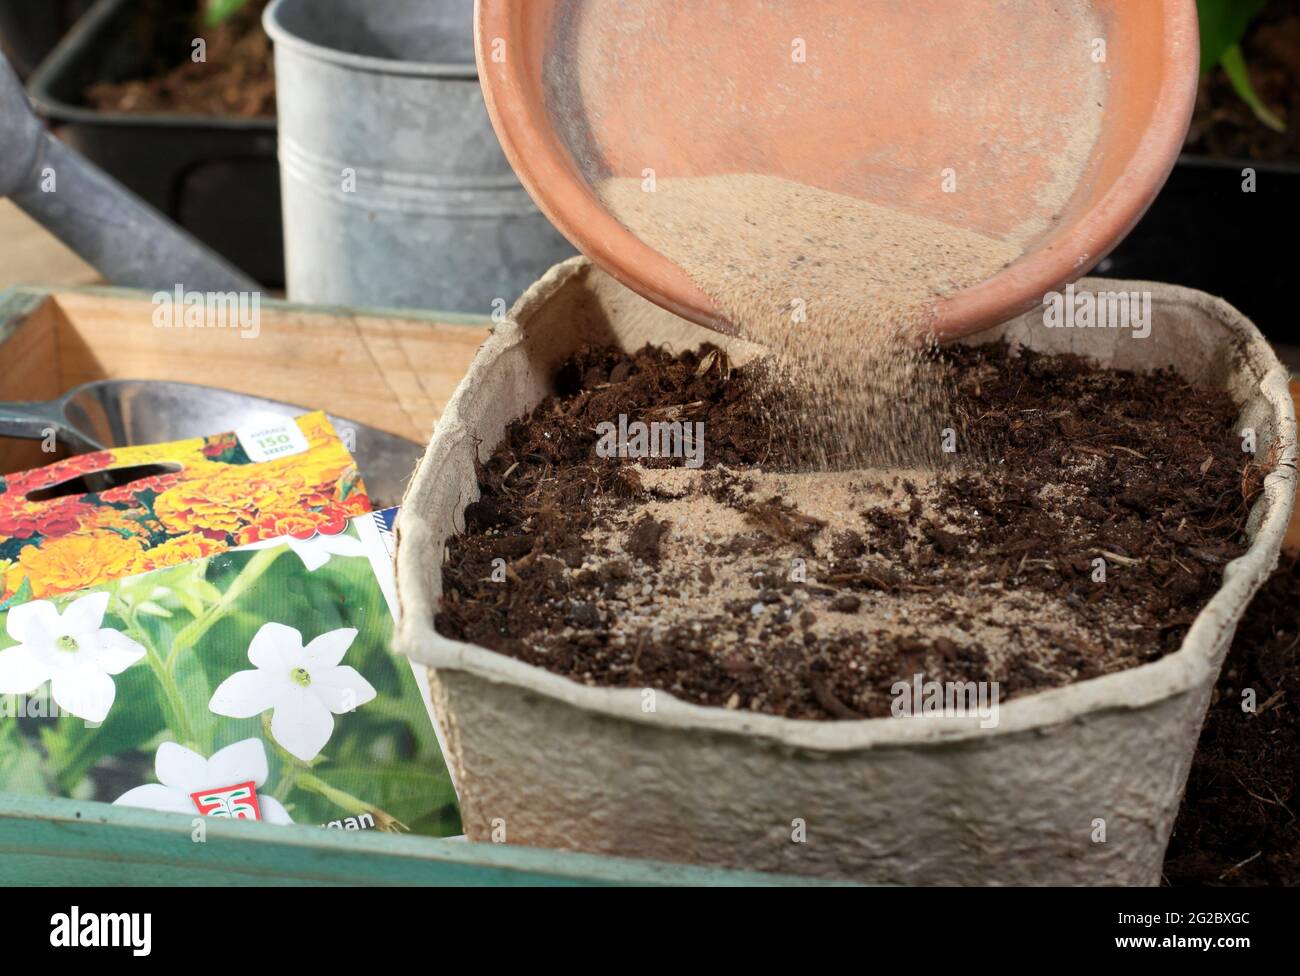 Feine Blumensamen, gemischt mit Gartenbausand, um eine gleichmäßige Verteilung vor der Aussaat in ein Tablett zu unterstützen - Nicotiana x Sanderae 'Fragrant Cloud' Stockfoto